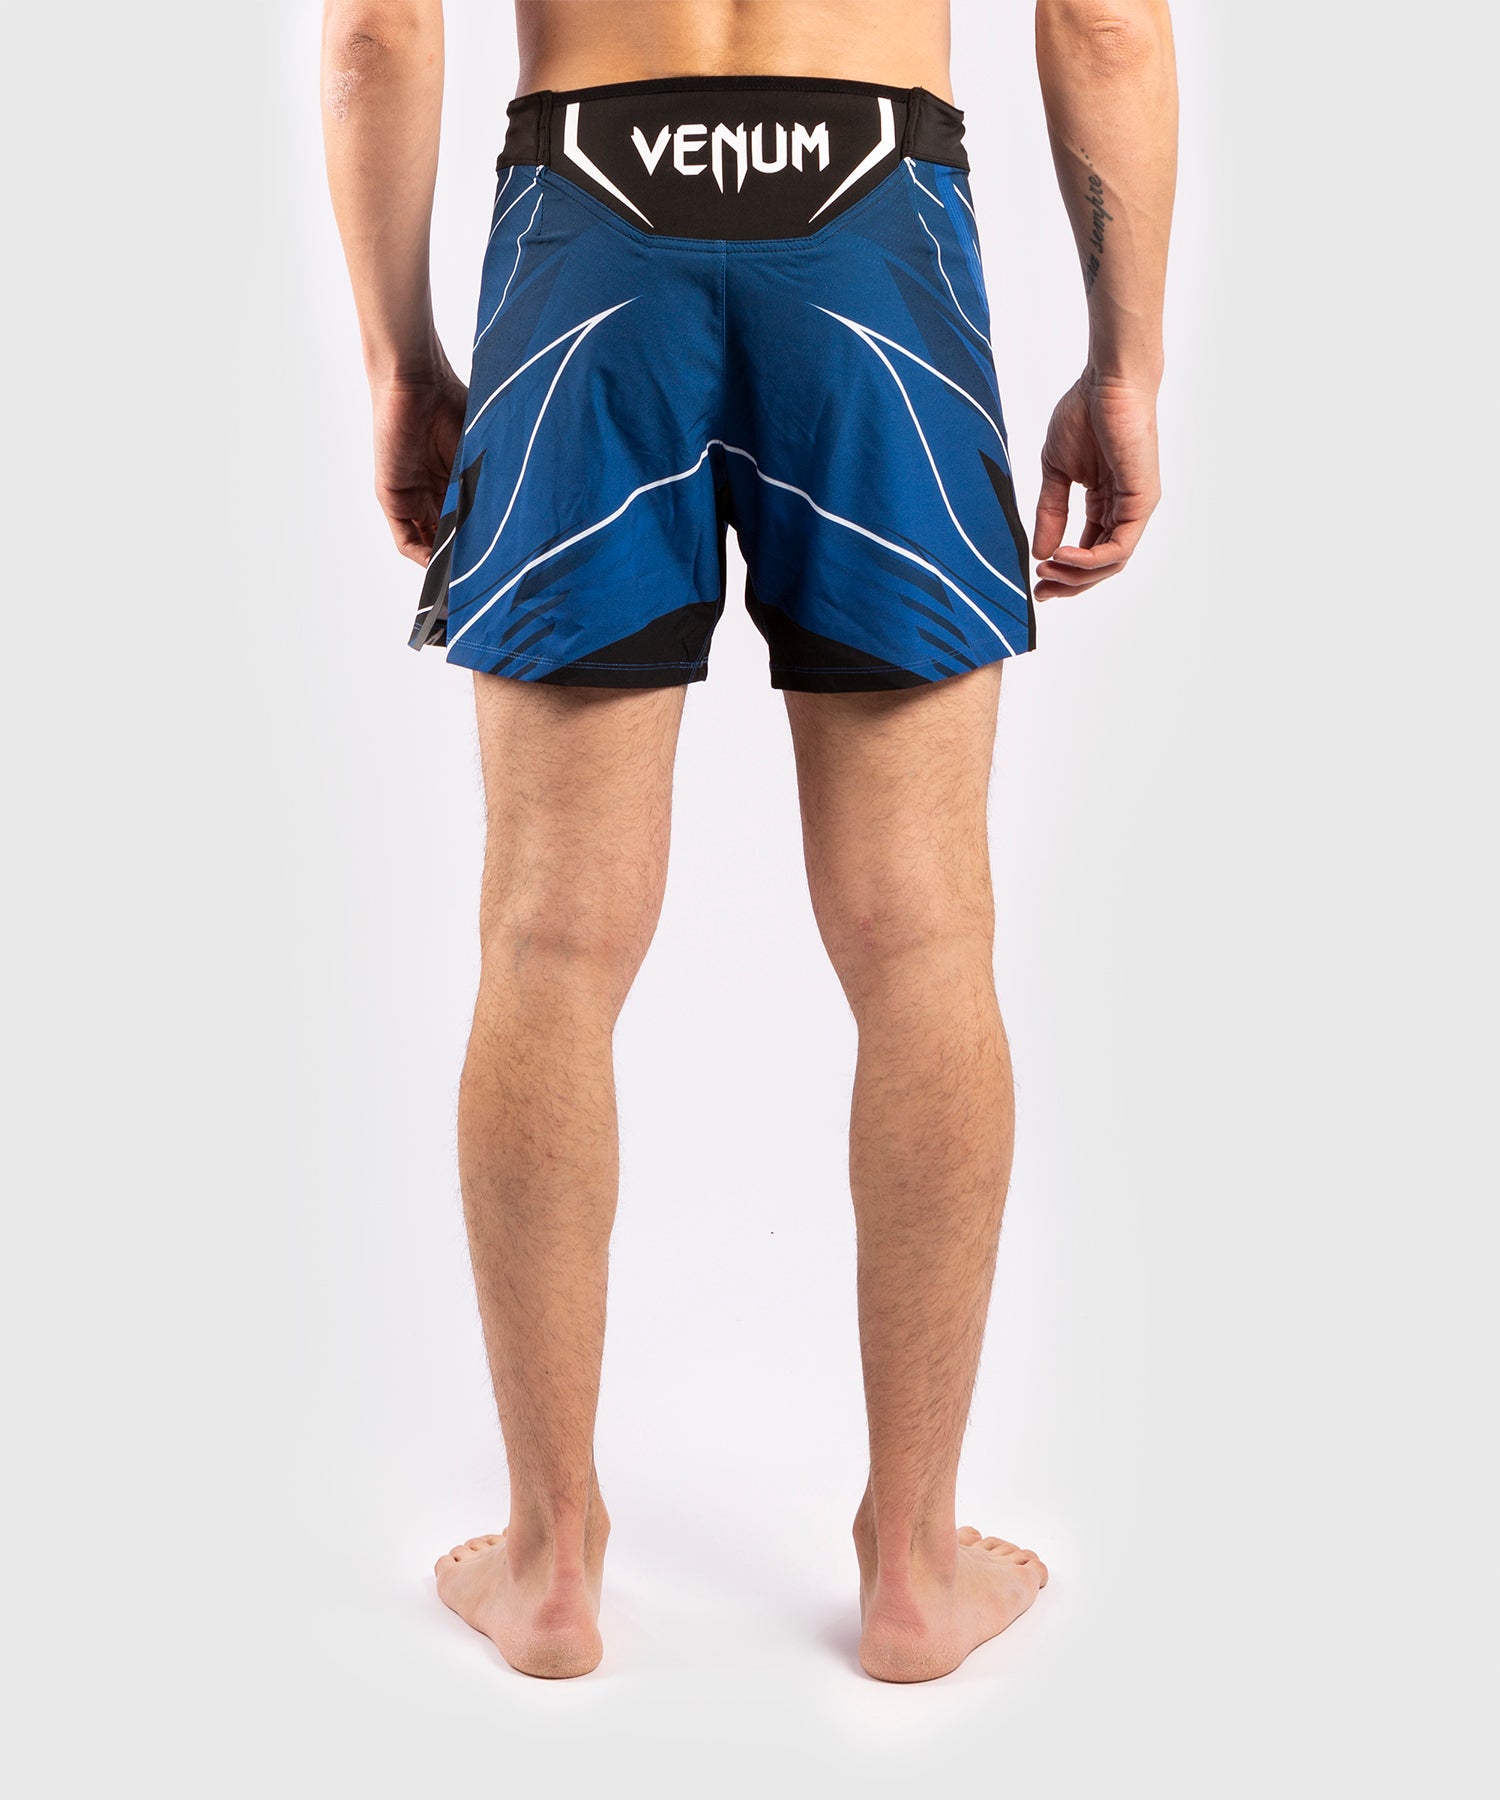 Fightshort Homme UFC Venum Pro Line - Bleu - Shorts de MMA